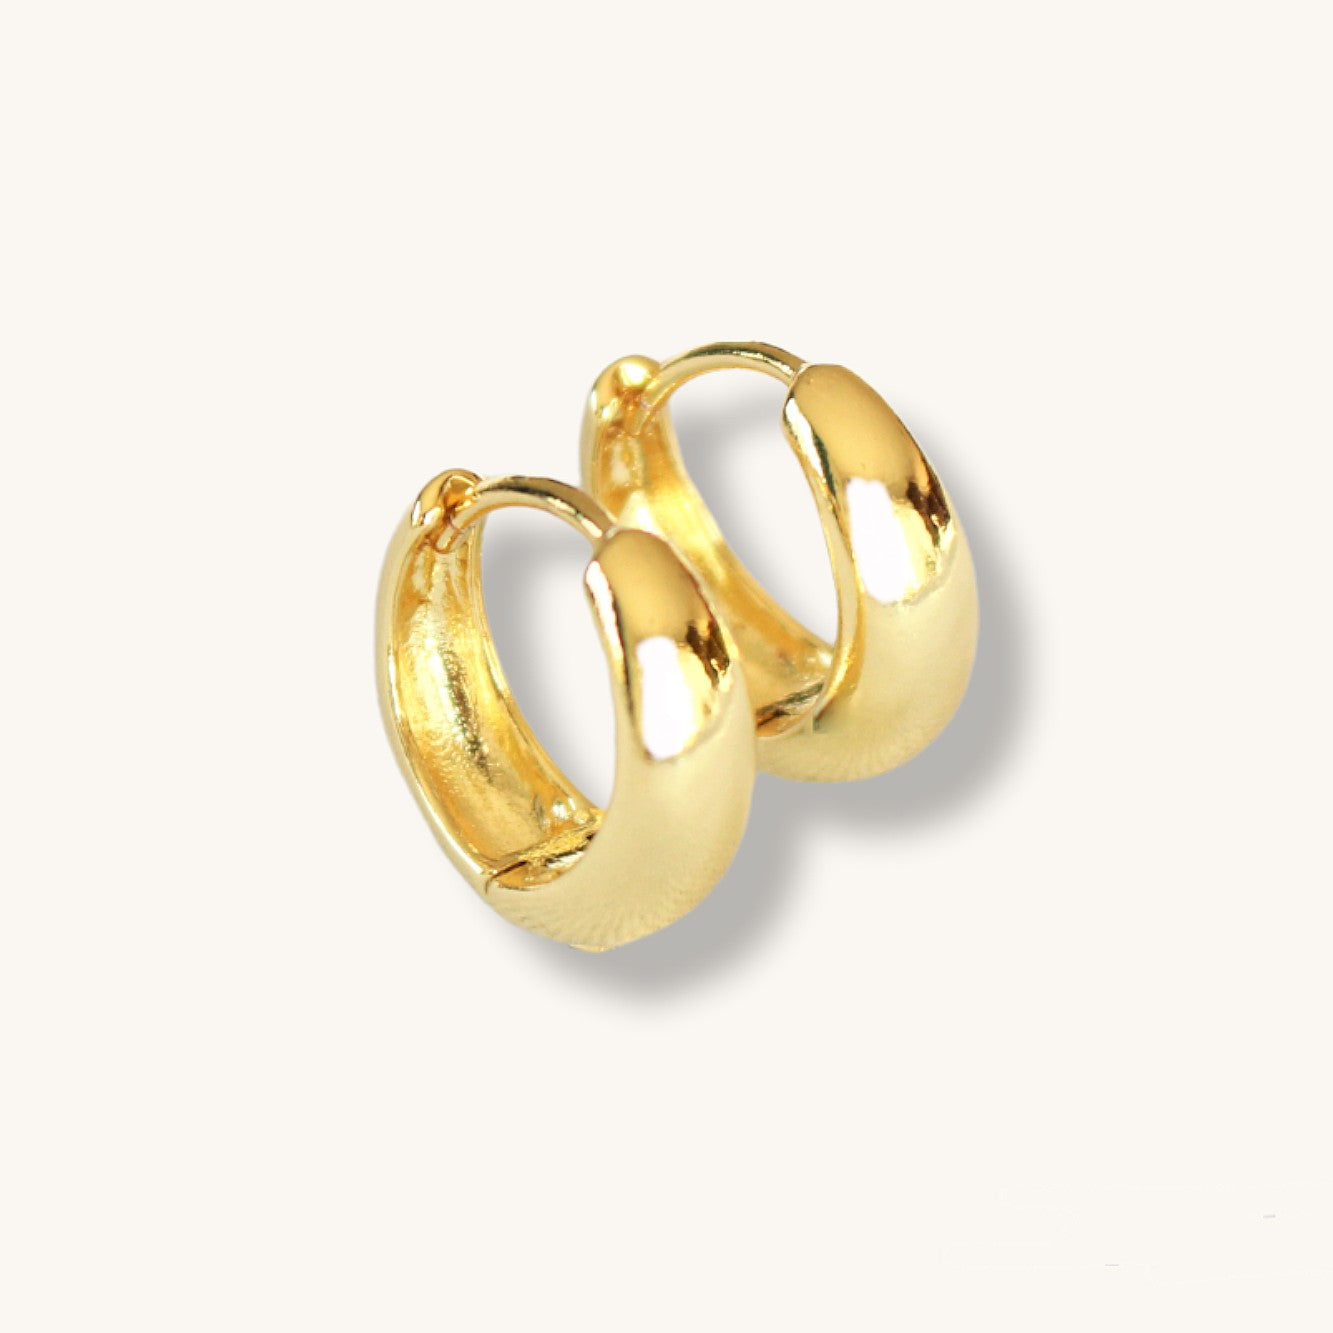 TIMELESS 15mm - 24k Thick gold hoops earrings · Minimalist Creole earrings · 1 pair · Long lasting earrings · Huggies